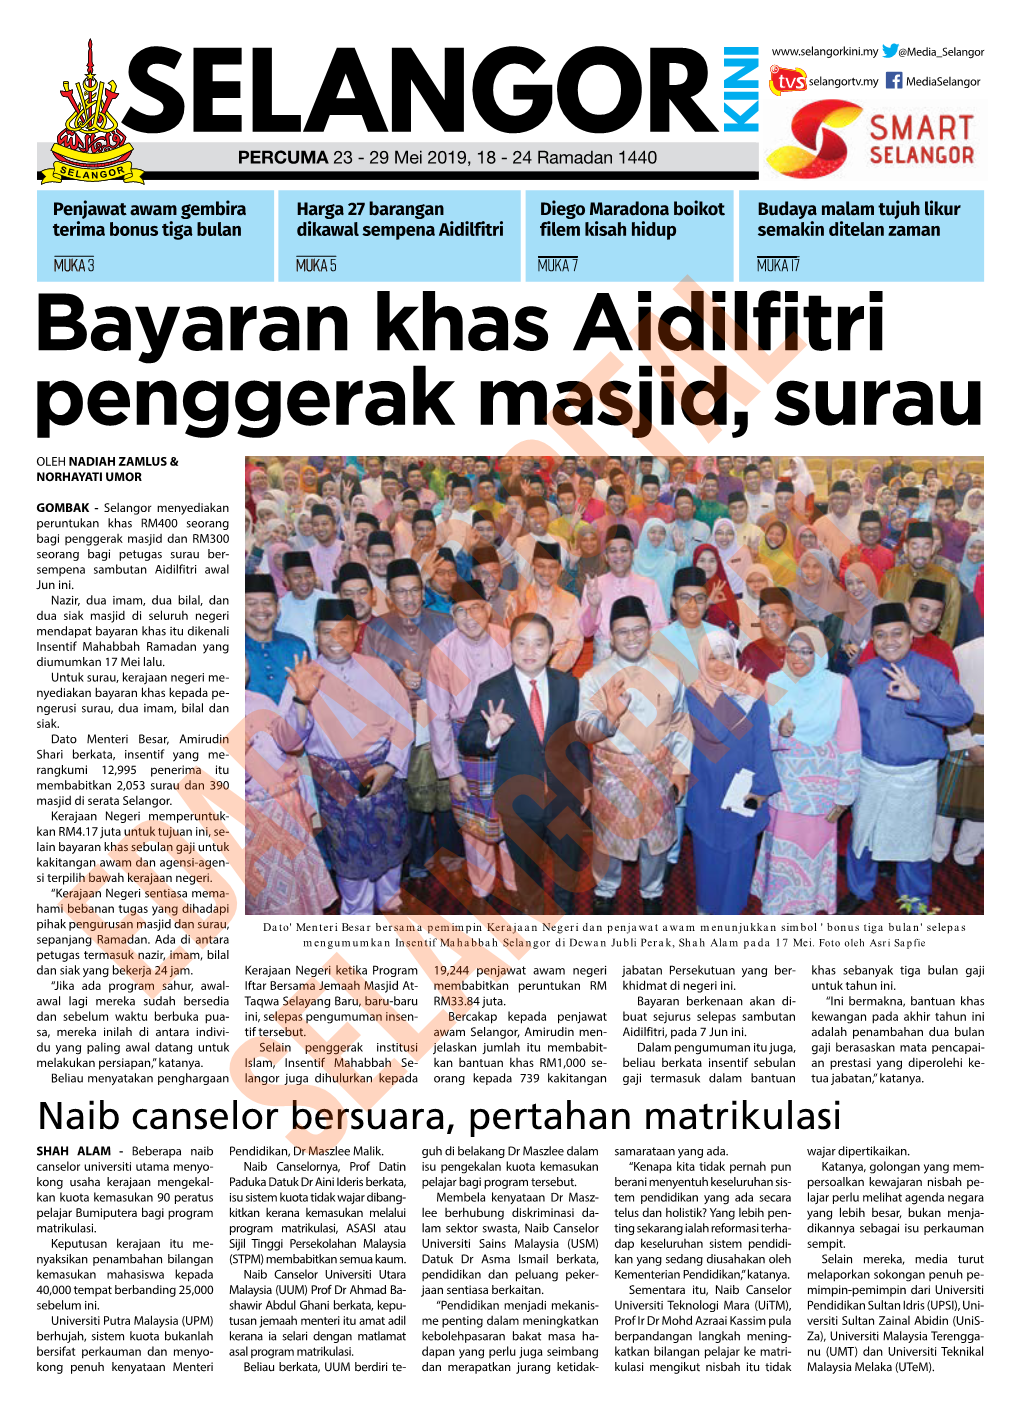 Bayaran Khas Aidilfitri Penggerak Masjid, Surau